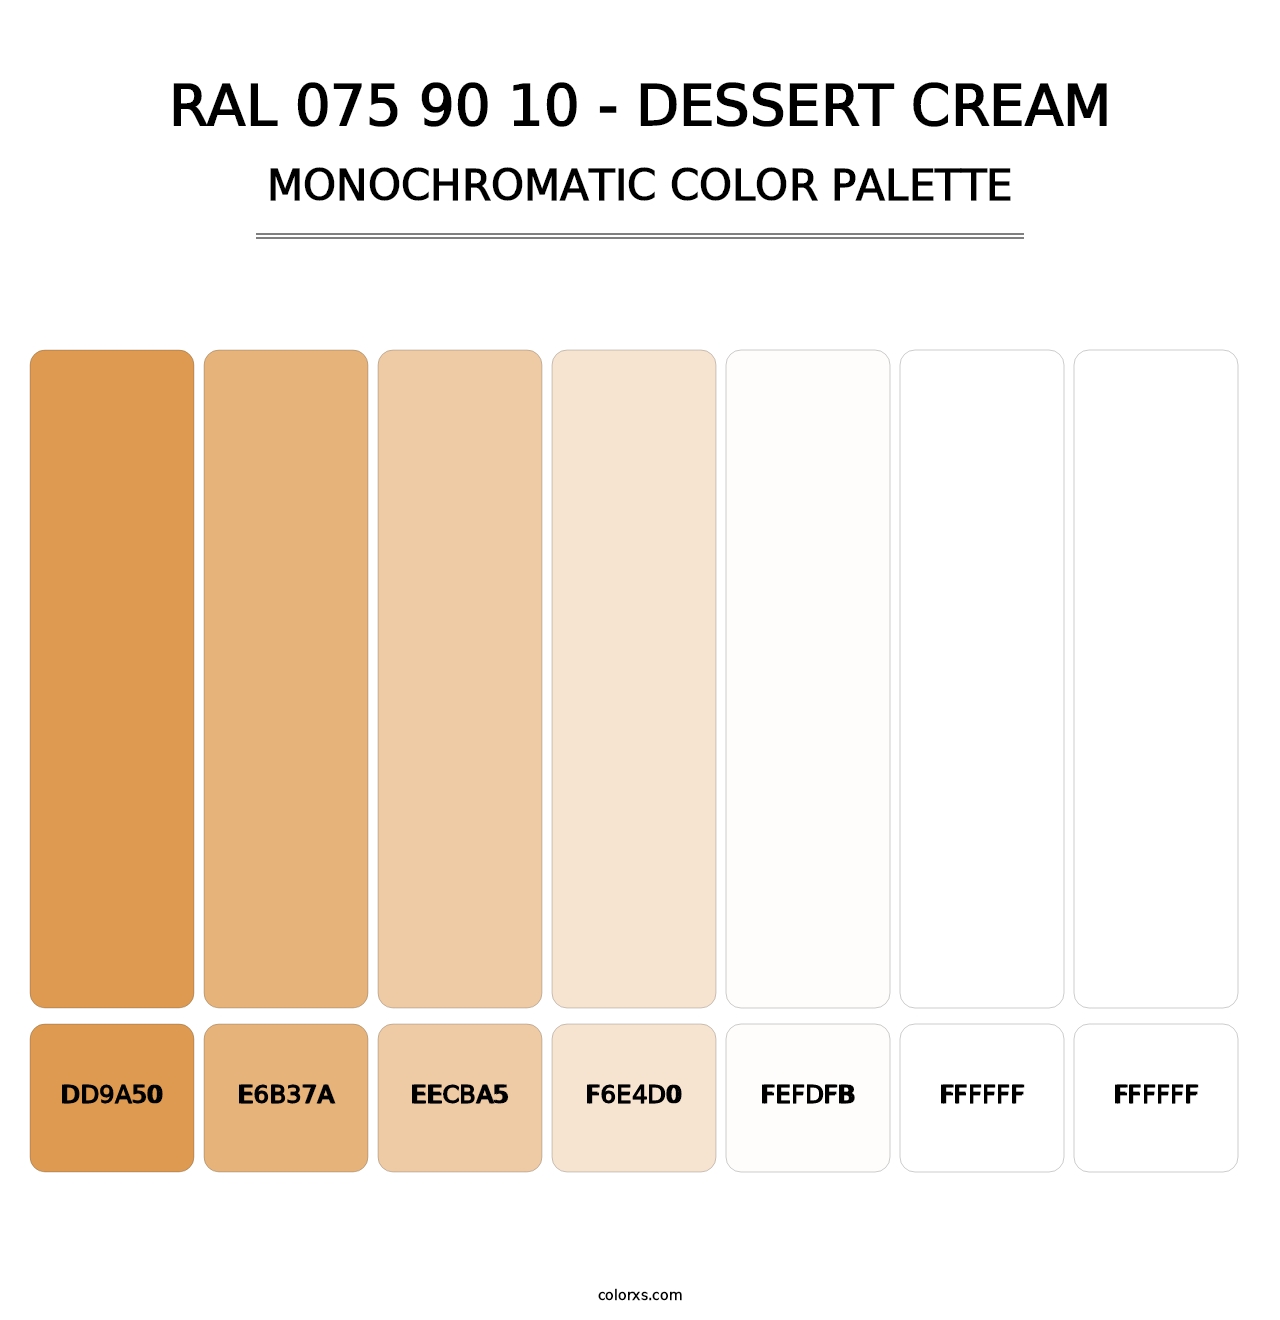 RAL 075 90 10 - Dessert Cream - Monochromatic Color Palette